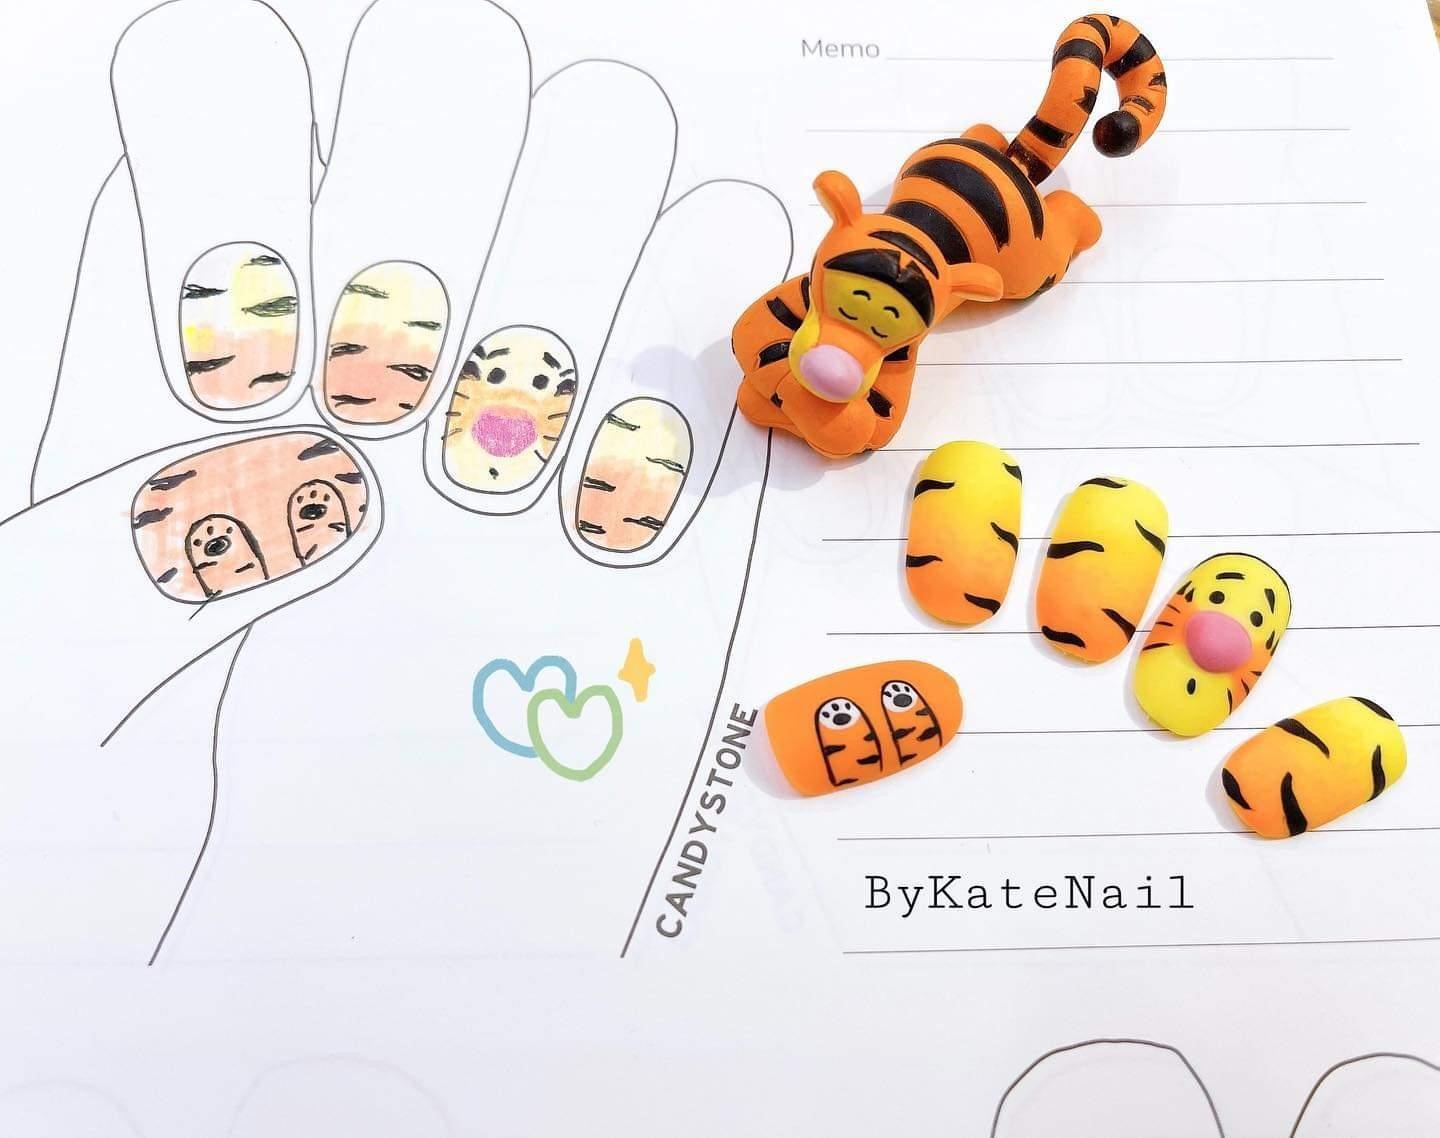  Cả một “bầu trời tuổi thơ” được tái hiện trong từng mẫu nail vẽ hoạt hình tại ByKateNail 